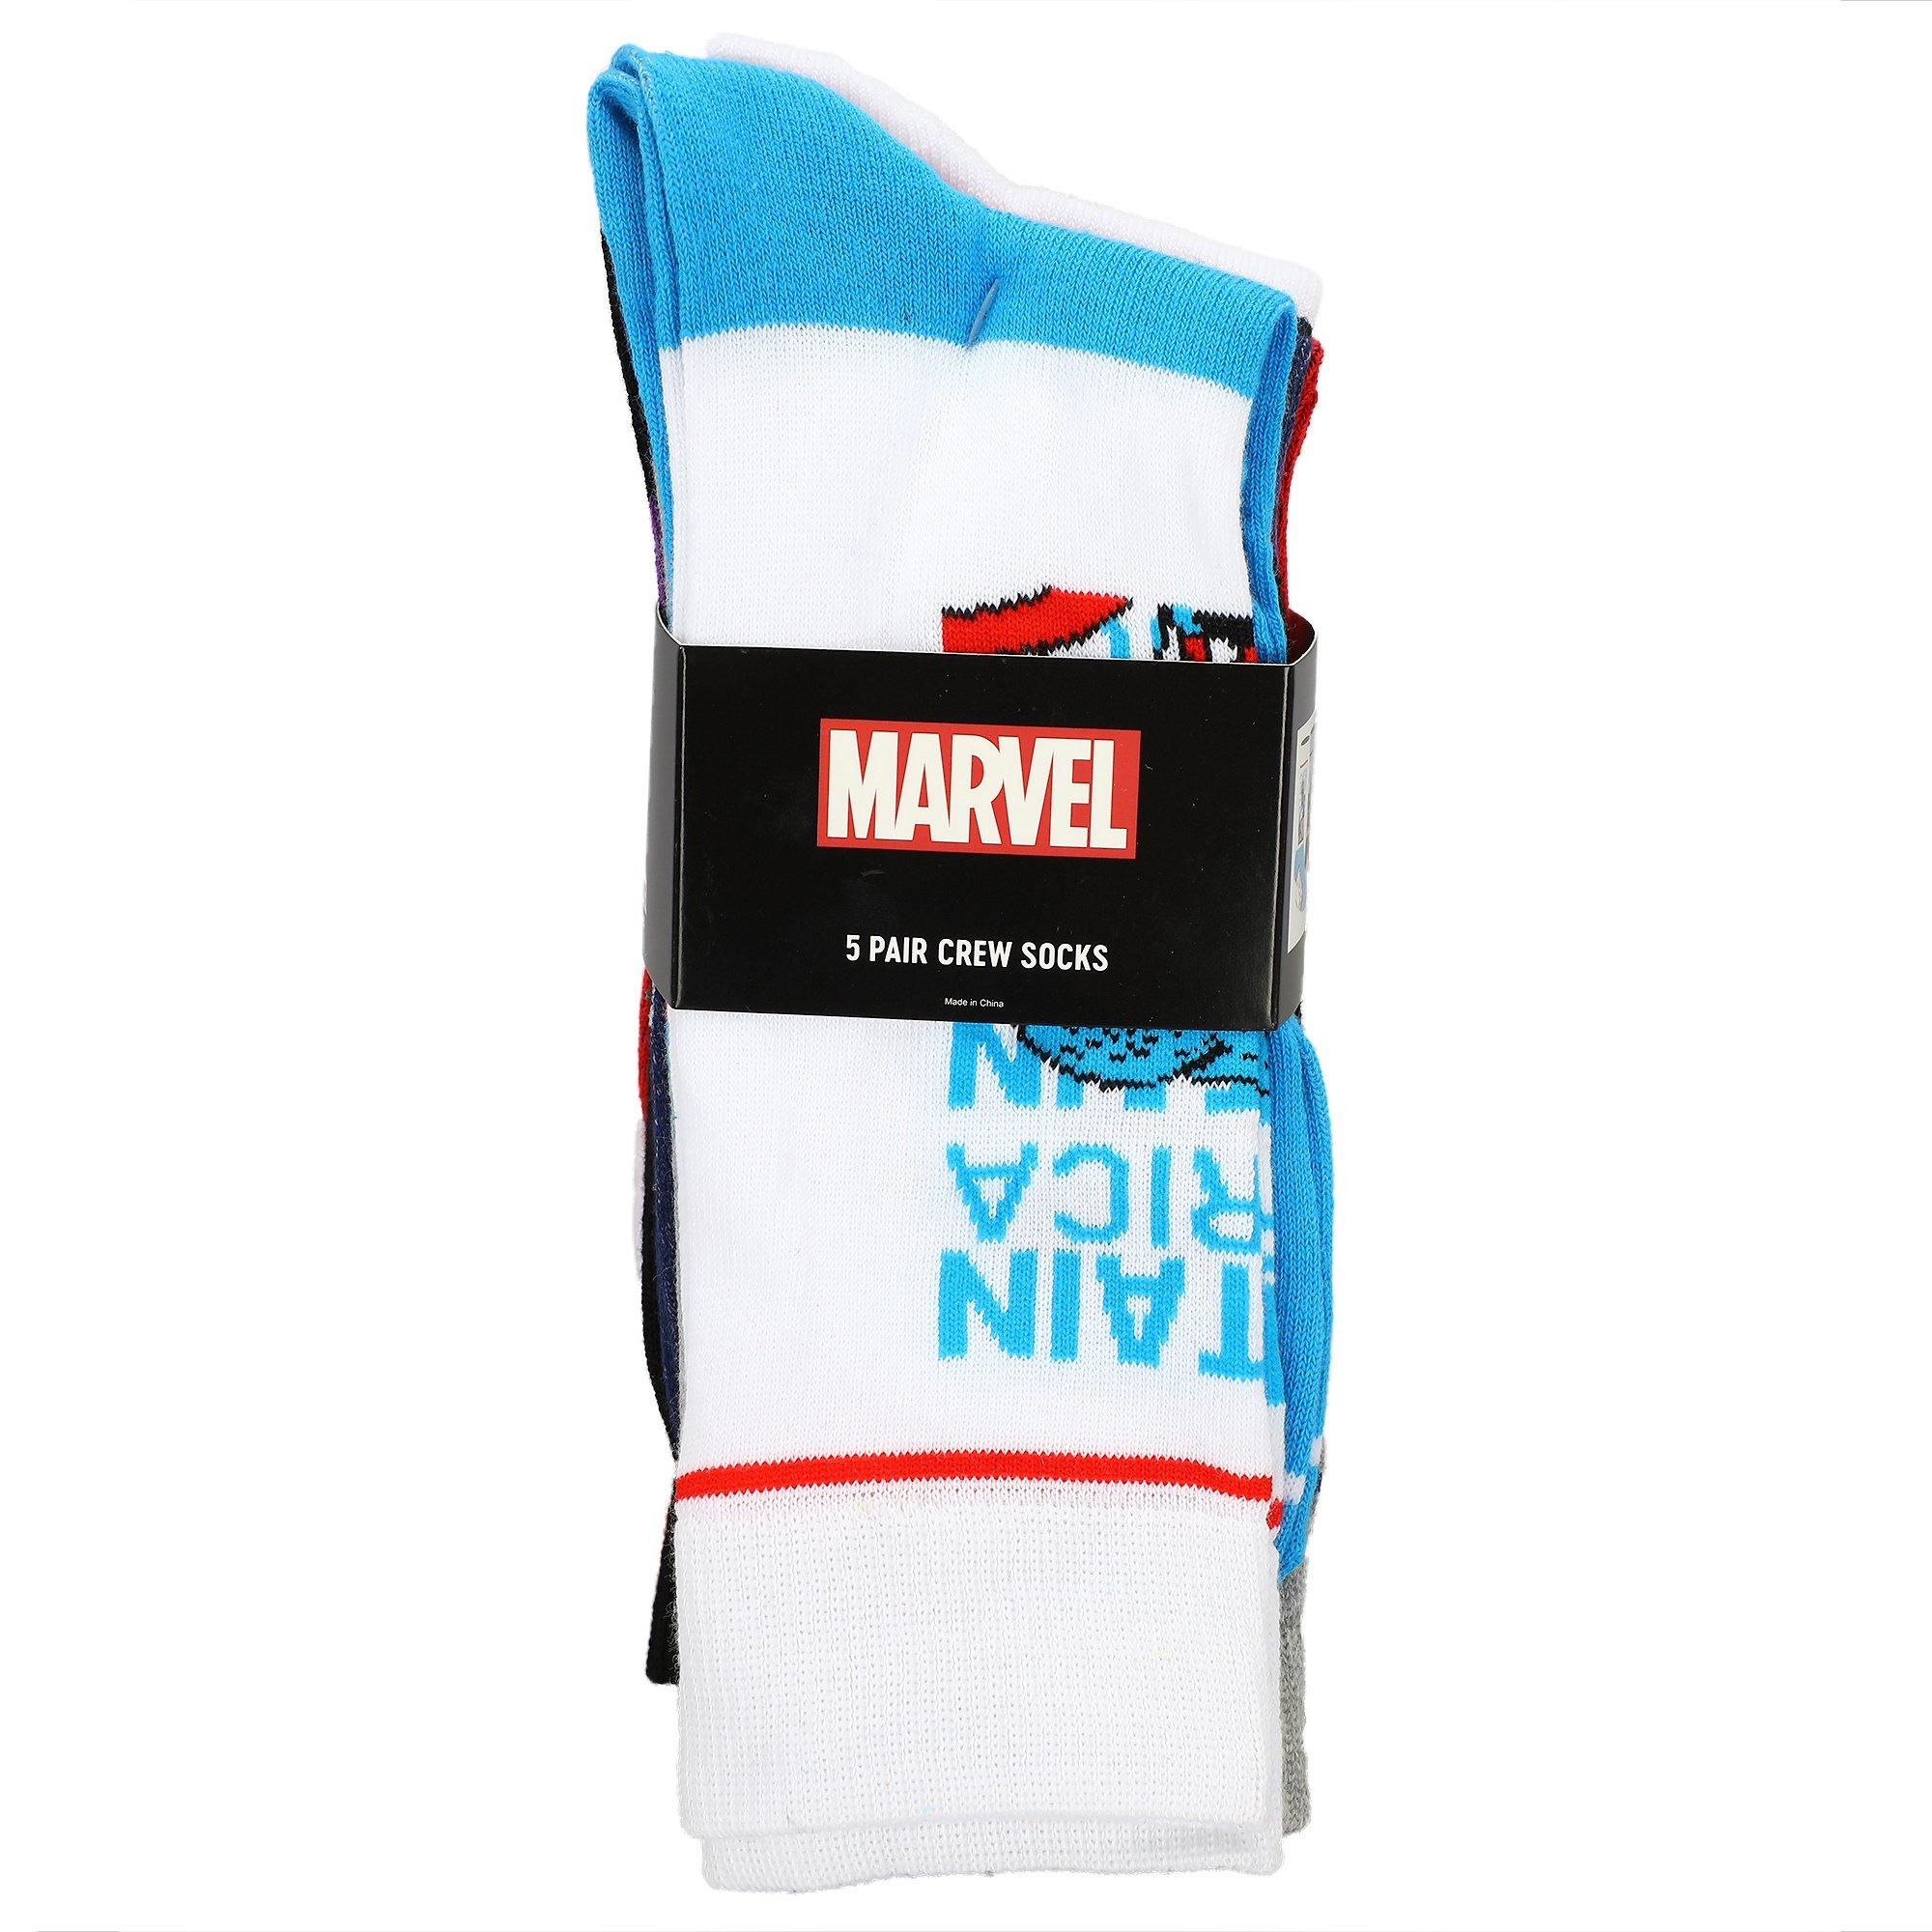 list item 7 of 7 Marvel Avengers Crew Socks 5 Pack